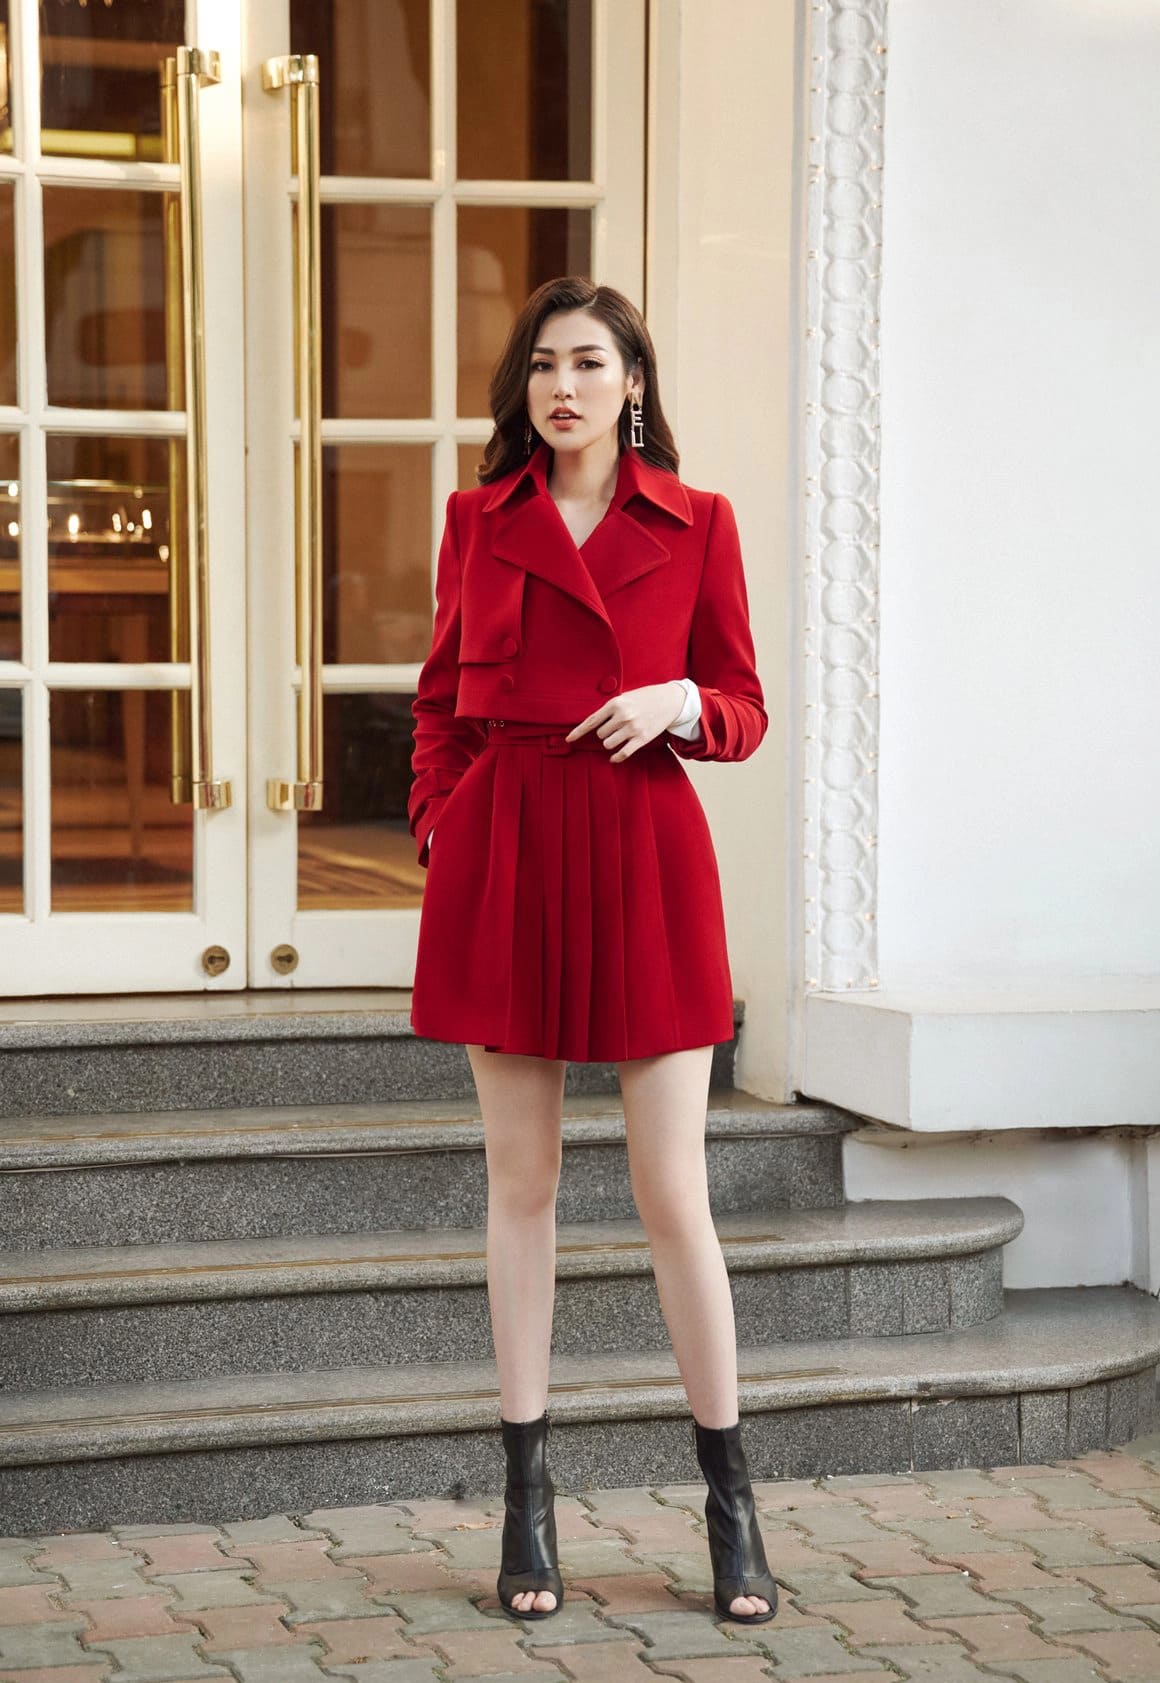 Chân váy đỏ đô kết hợp với áo màu gì? 8 gợi ý cực sang chảnh